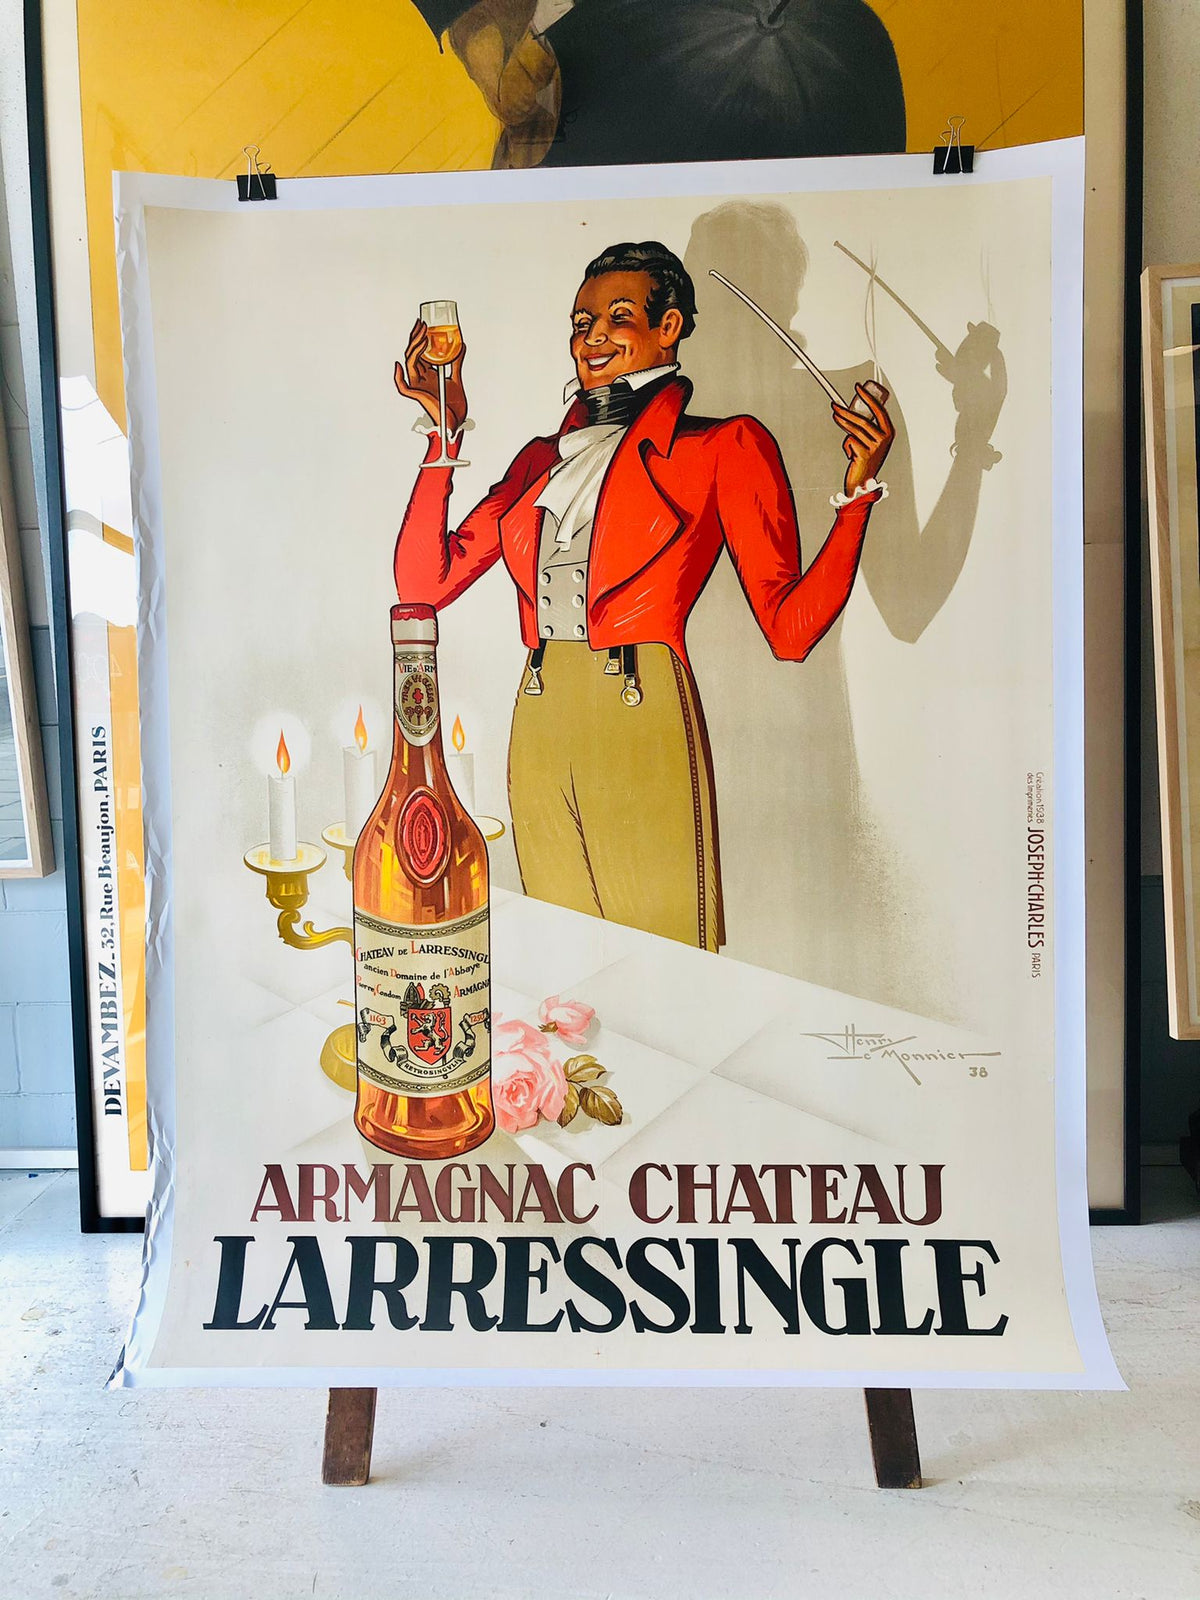 Armagnac Chateau Larressingle by Monnie